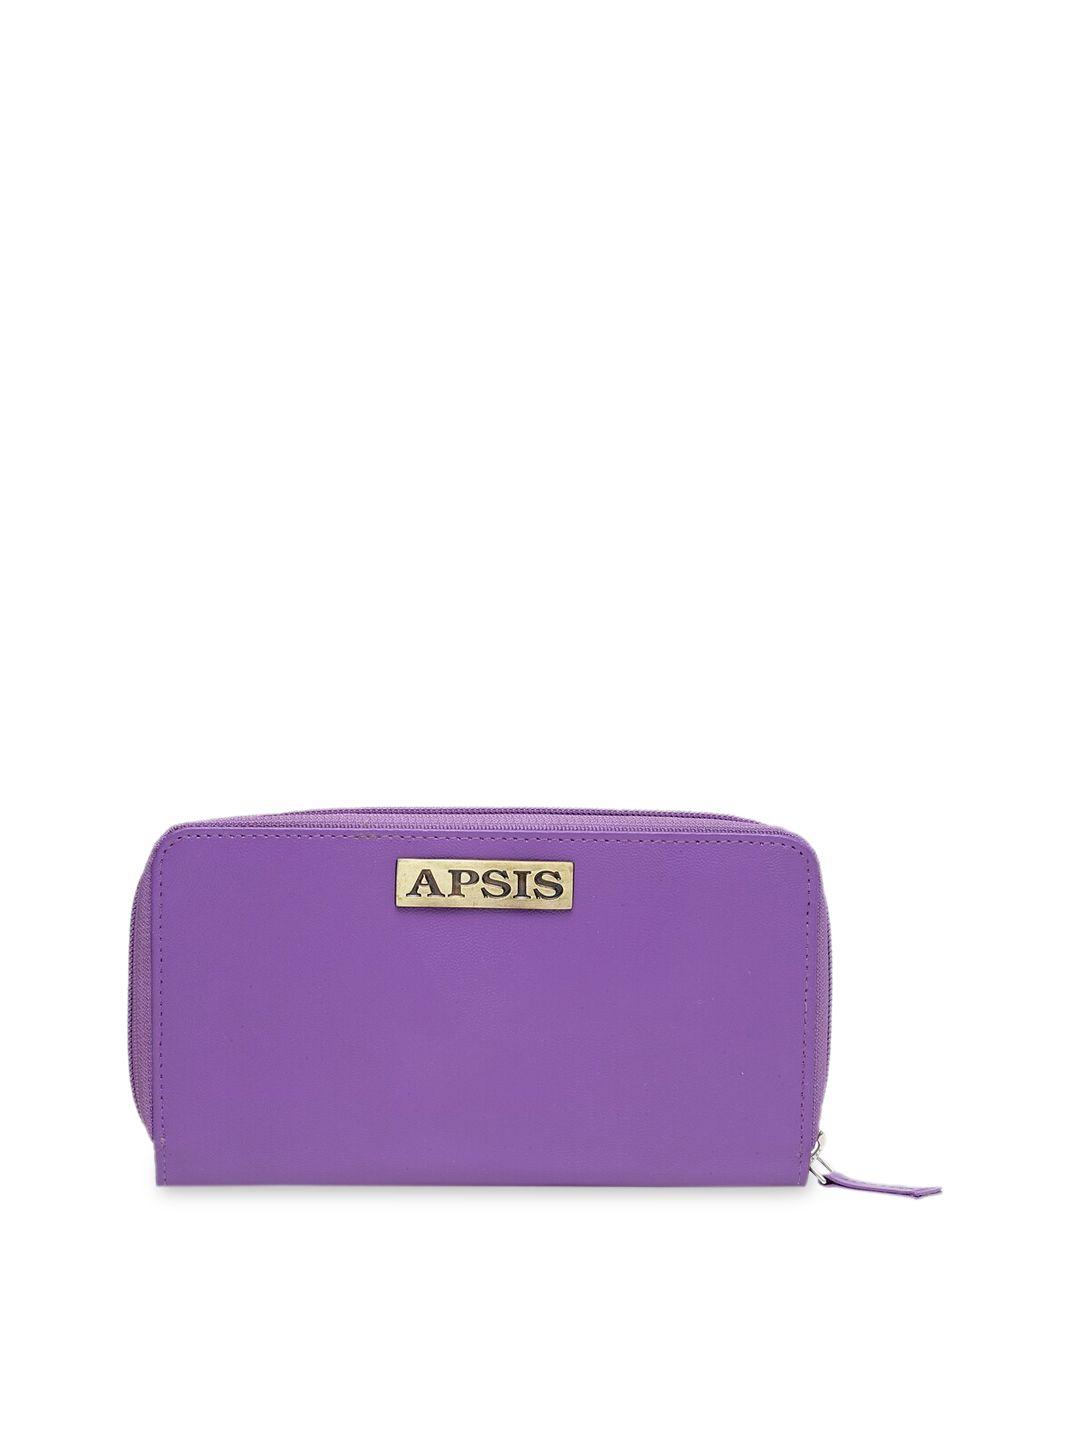 apsis women purple solid zip around wallet